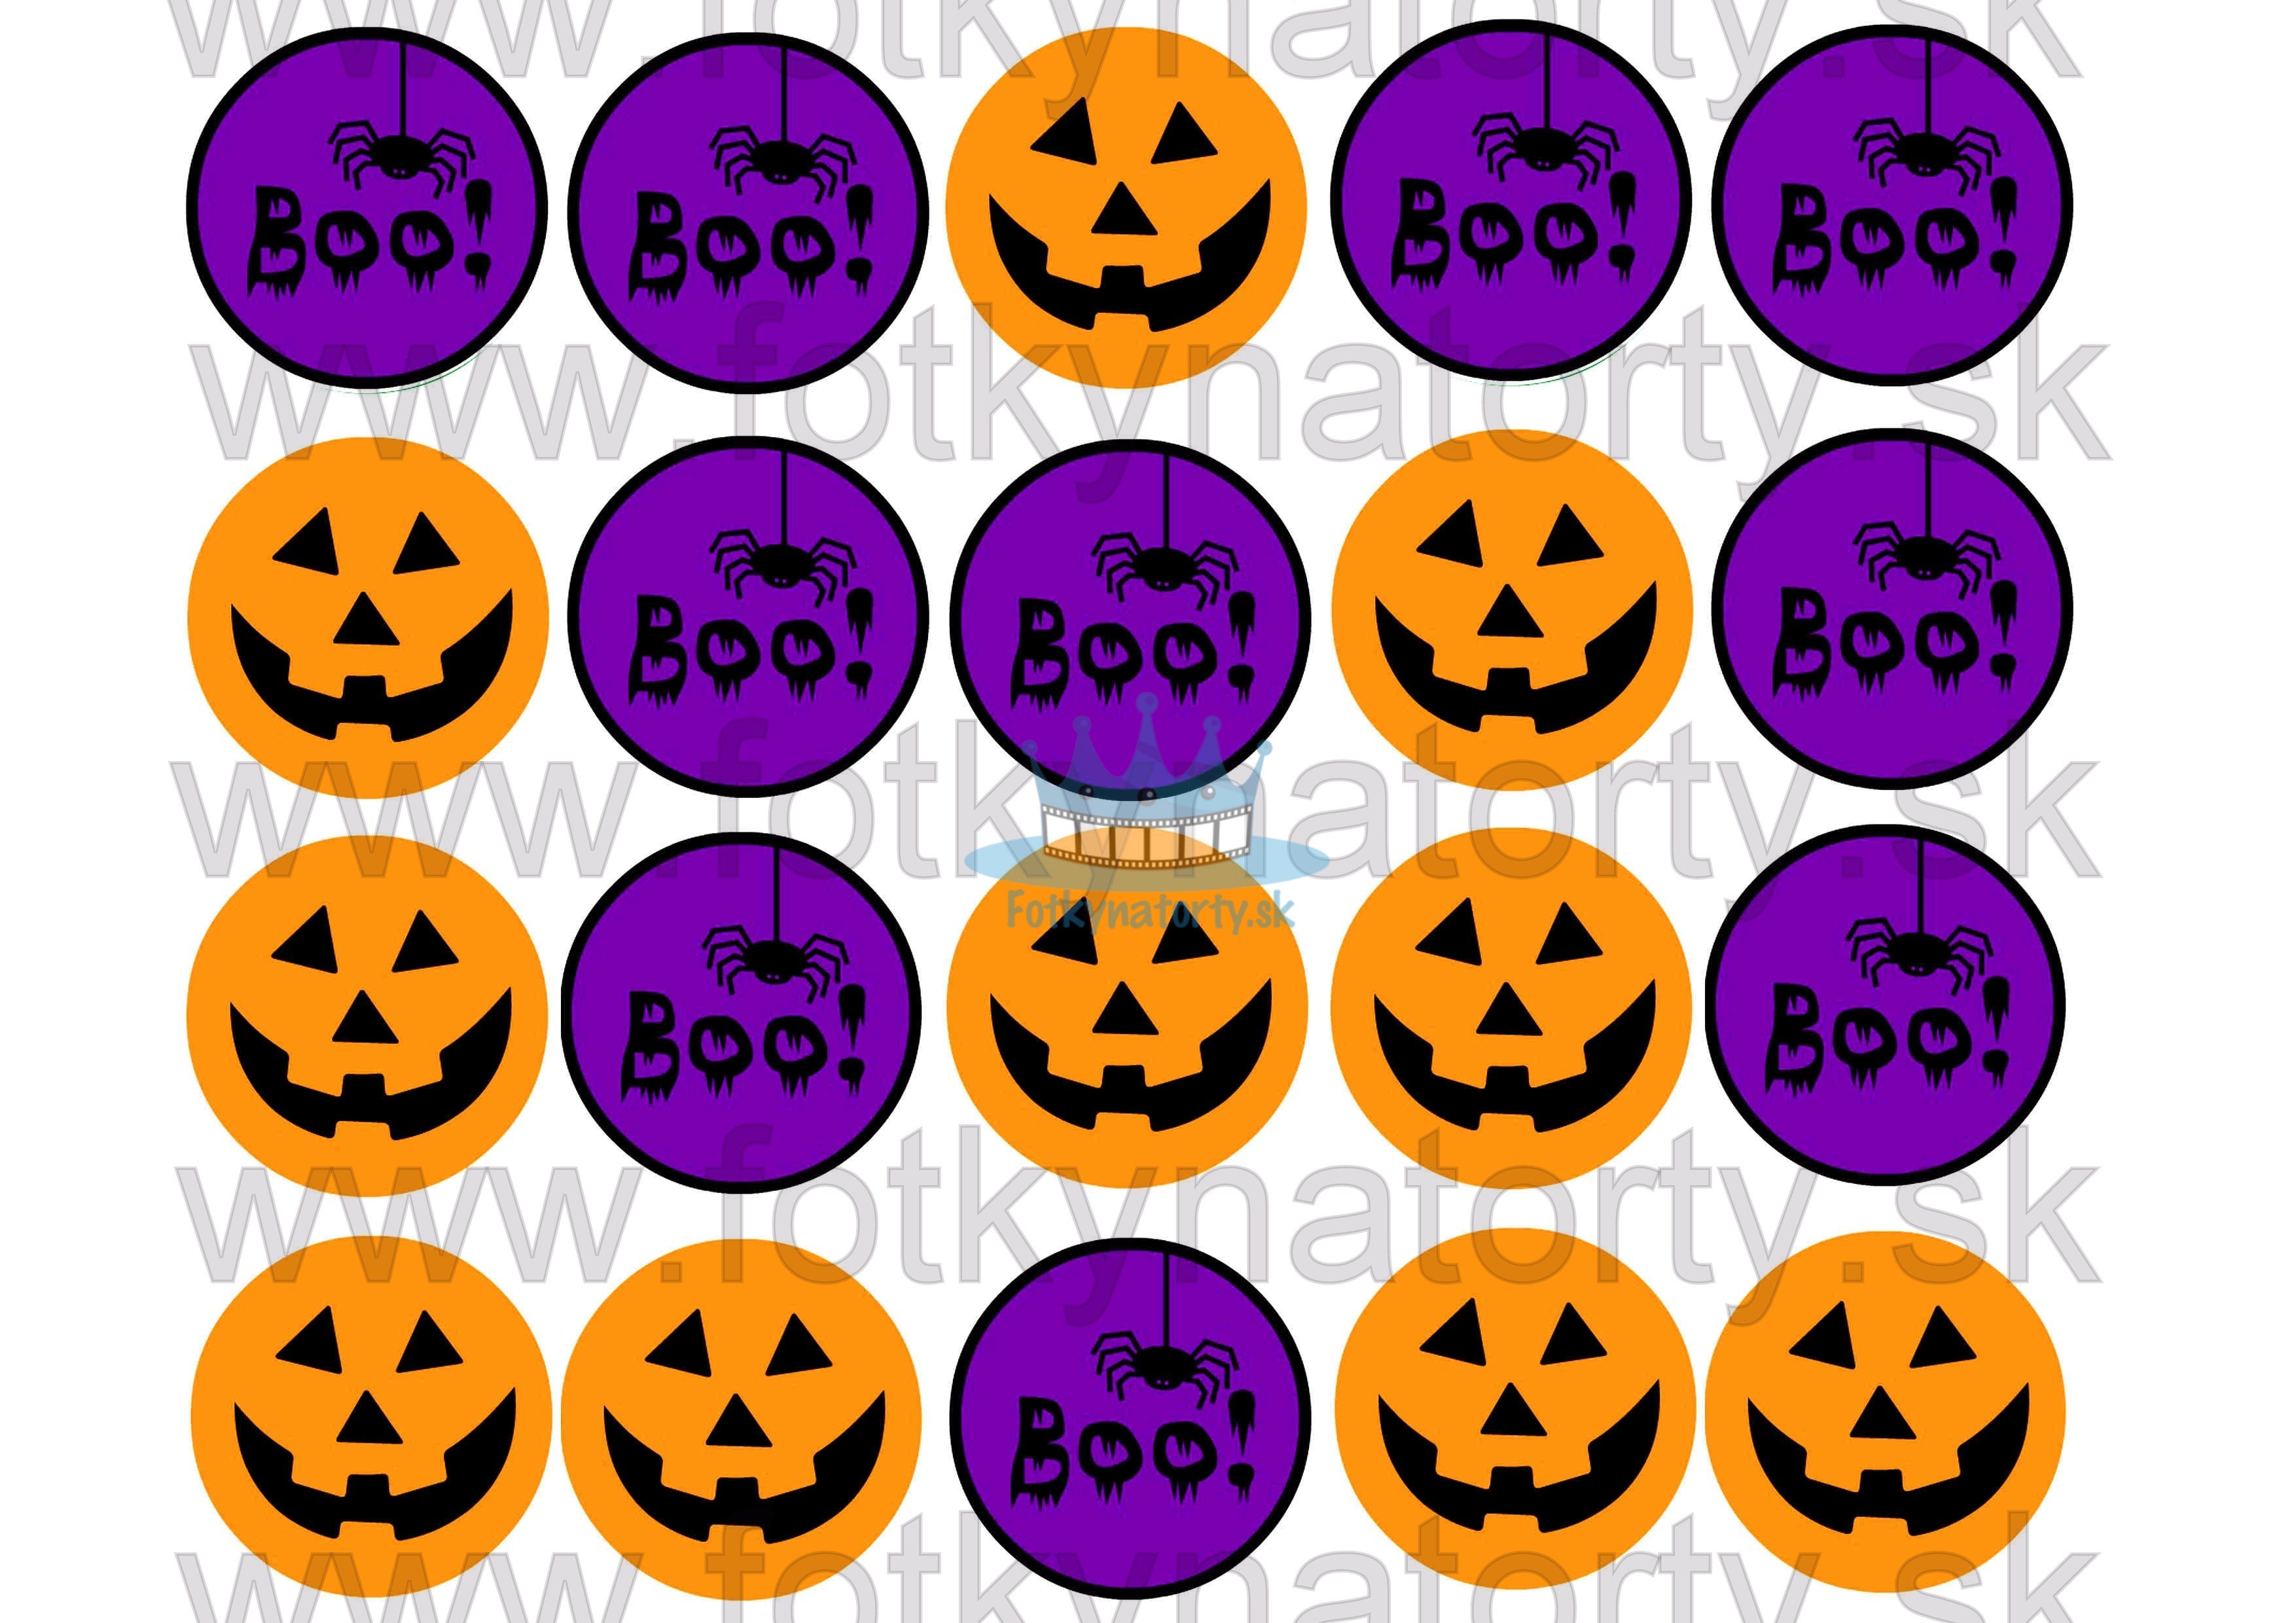 Halloweenske dekorácie na muffiny - 20 ks - jedlé dekorácie na zákusky, medovníčky a iné dobrôtky / na tortu / jedlé tortové obrázky / dekorácie na pečenie/ Fotky na torty